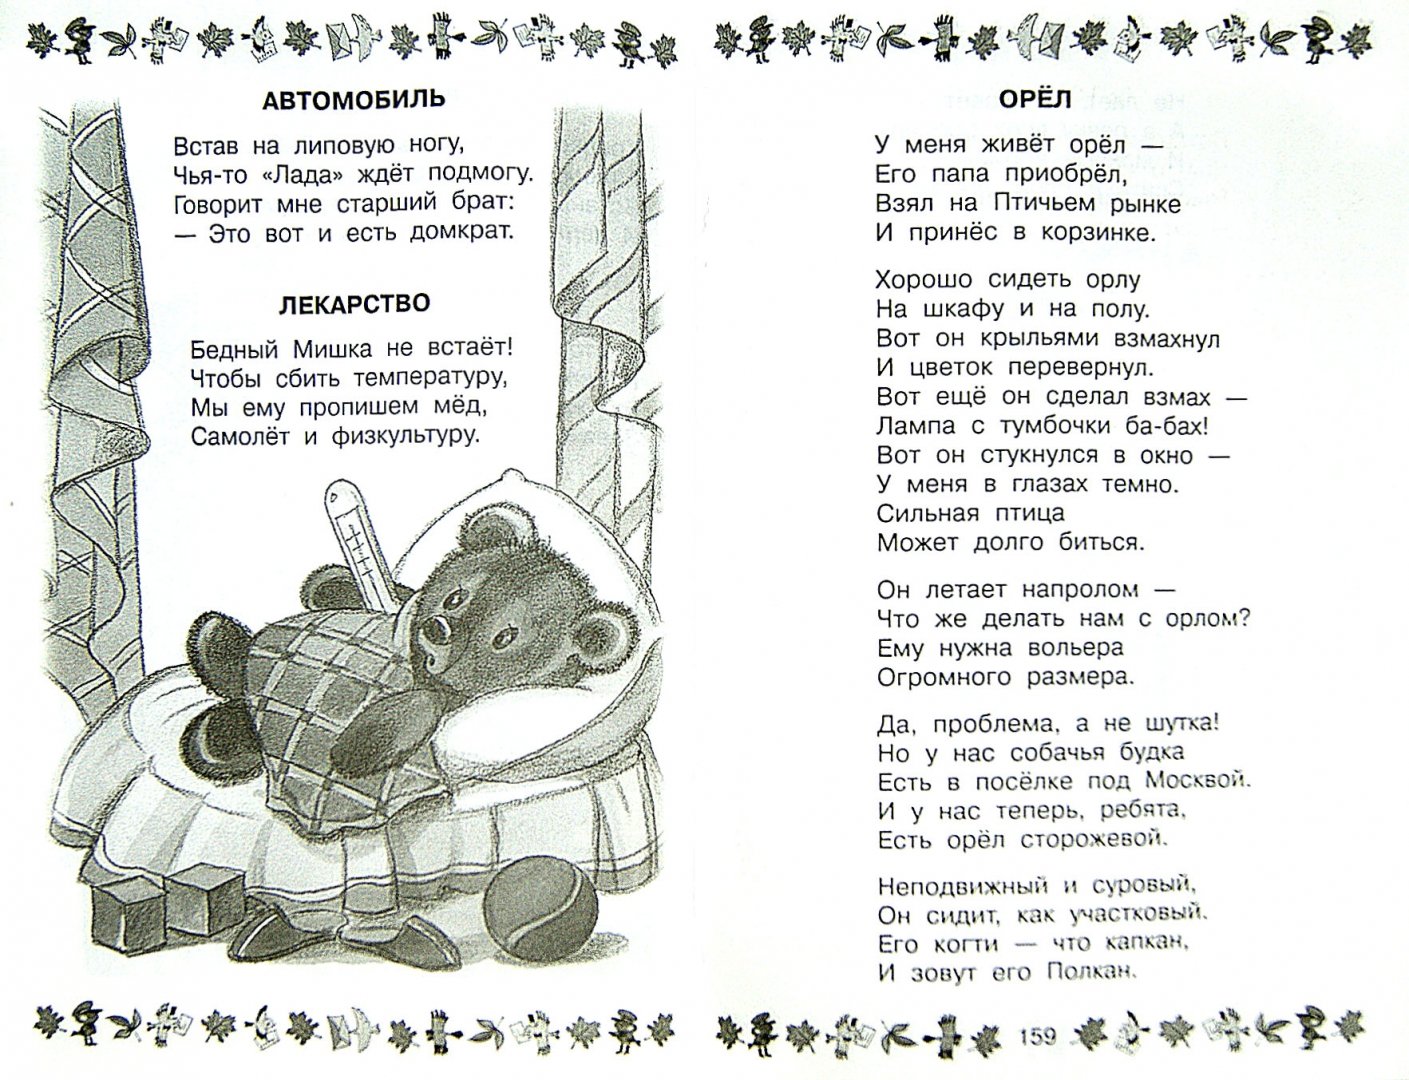 Иллюстрация 1 из 5 для 100 любимых новых стихов и сказок Э. Успенского - Эдуард Успенский | Лабиринт - книги. Источник: Лабиринт